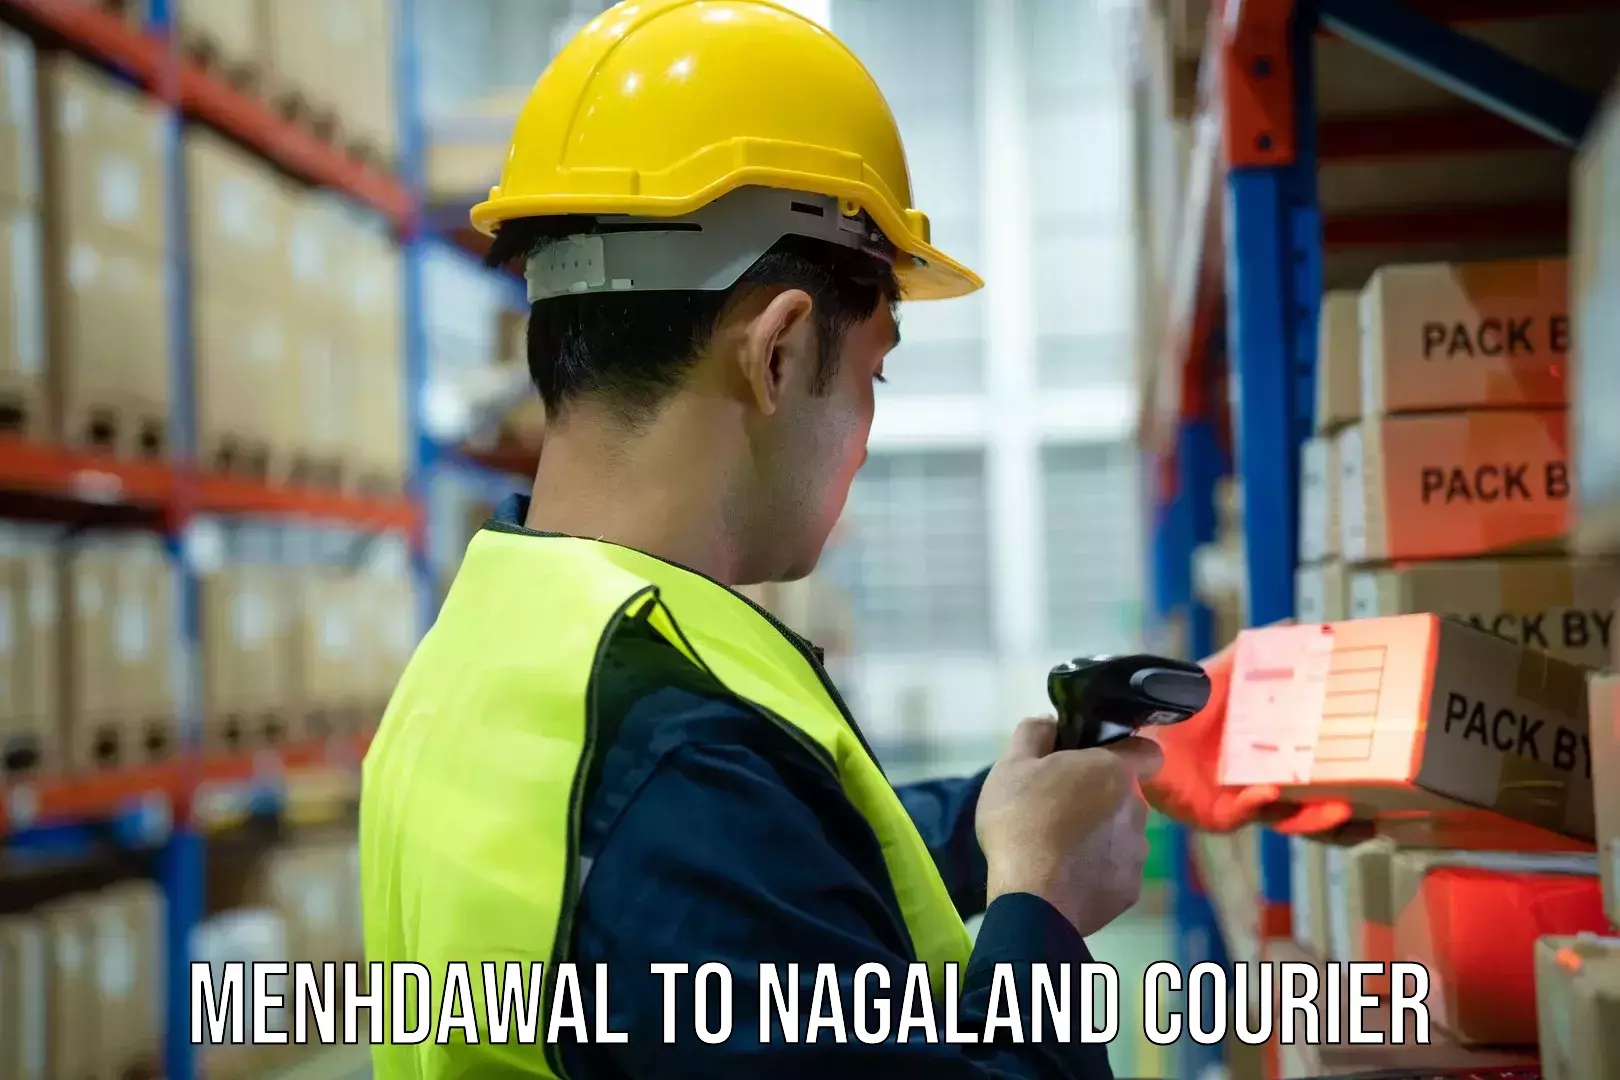 Smart parcel tracking Menhdawal to Nagaland